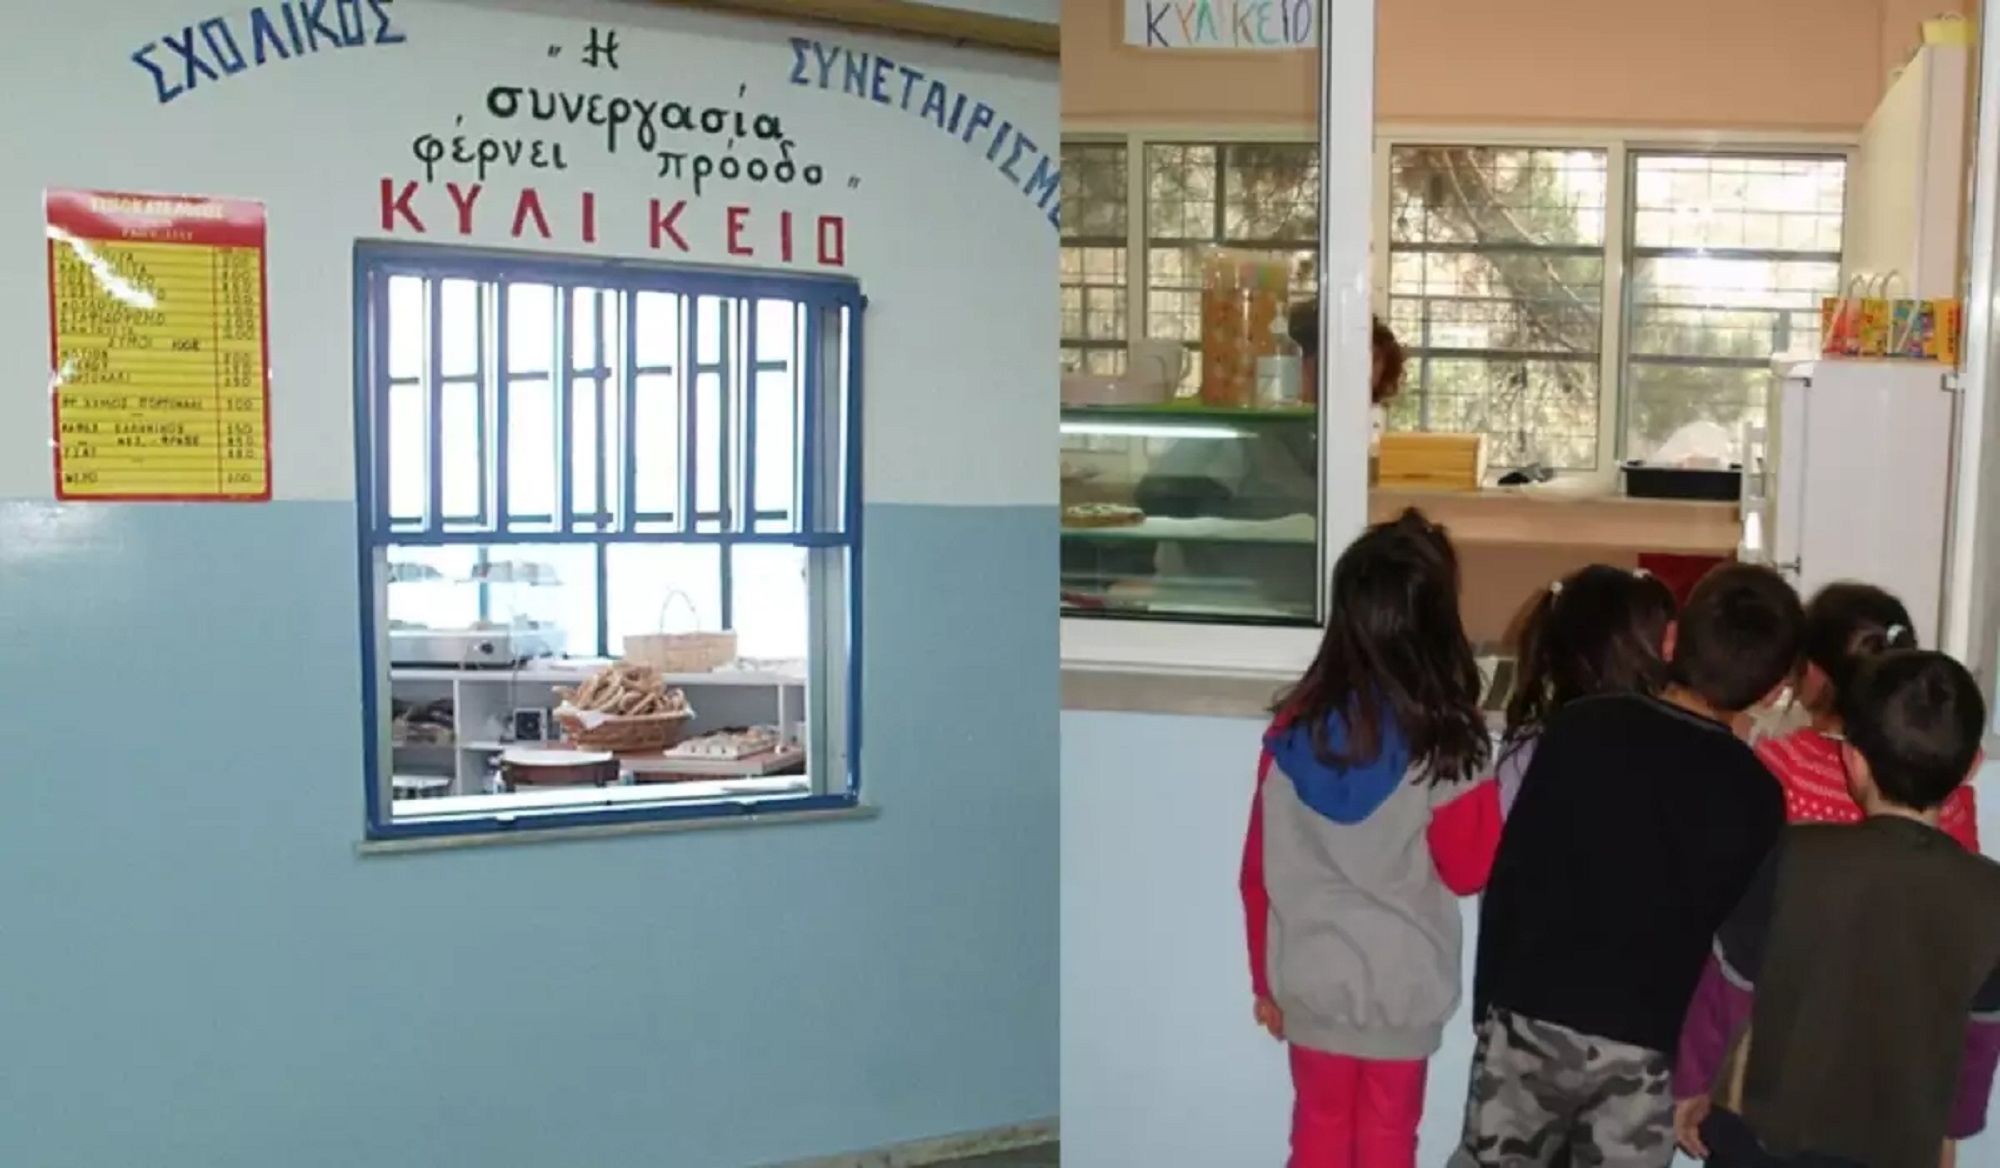 Κυλικεία σχολείων: Εντατικοί υγειονομικοί έλεγχοι από την Περιφέρεια Αττικής